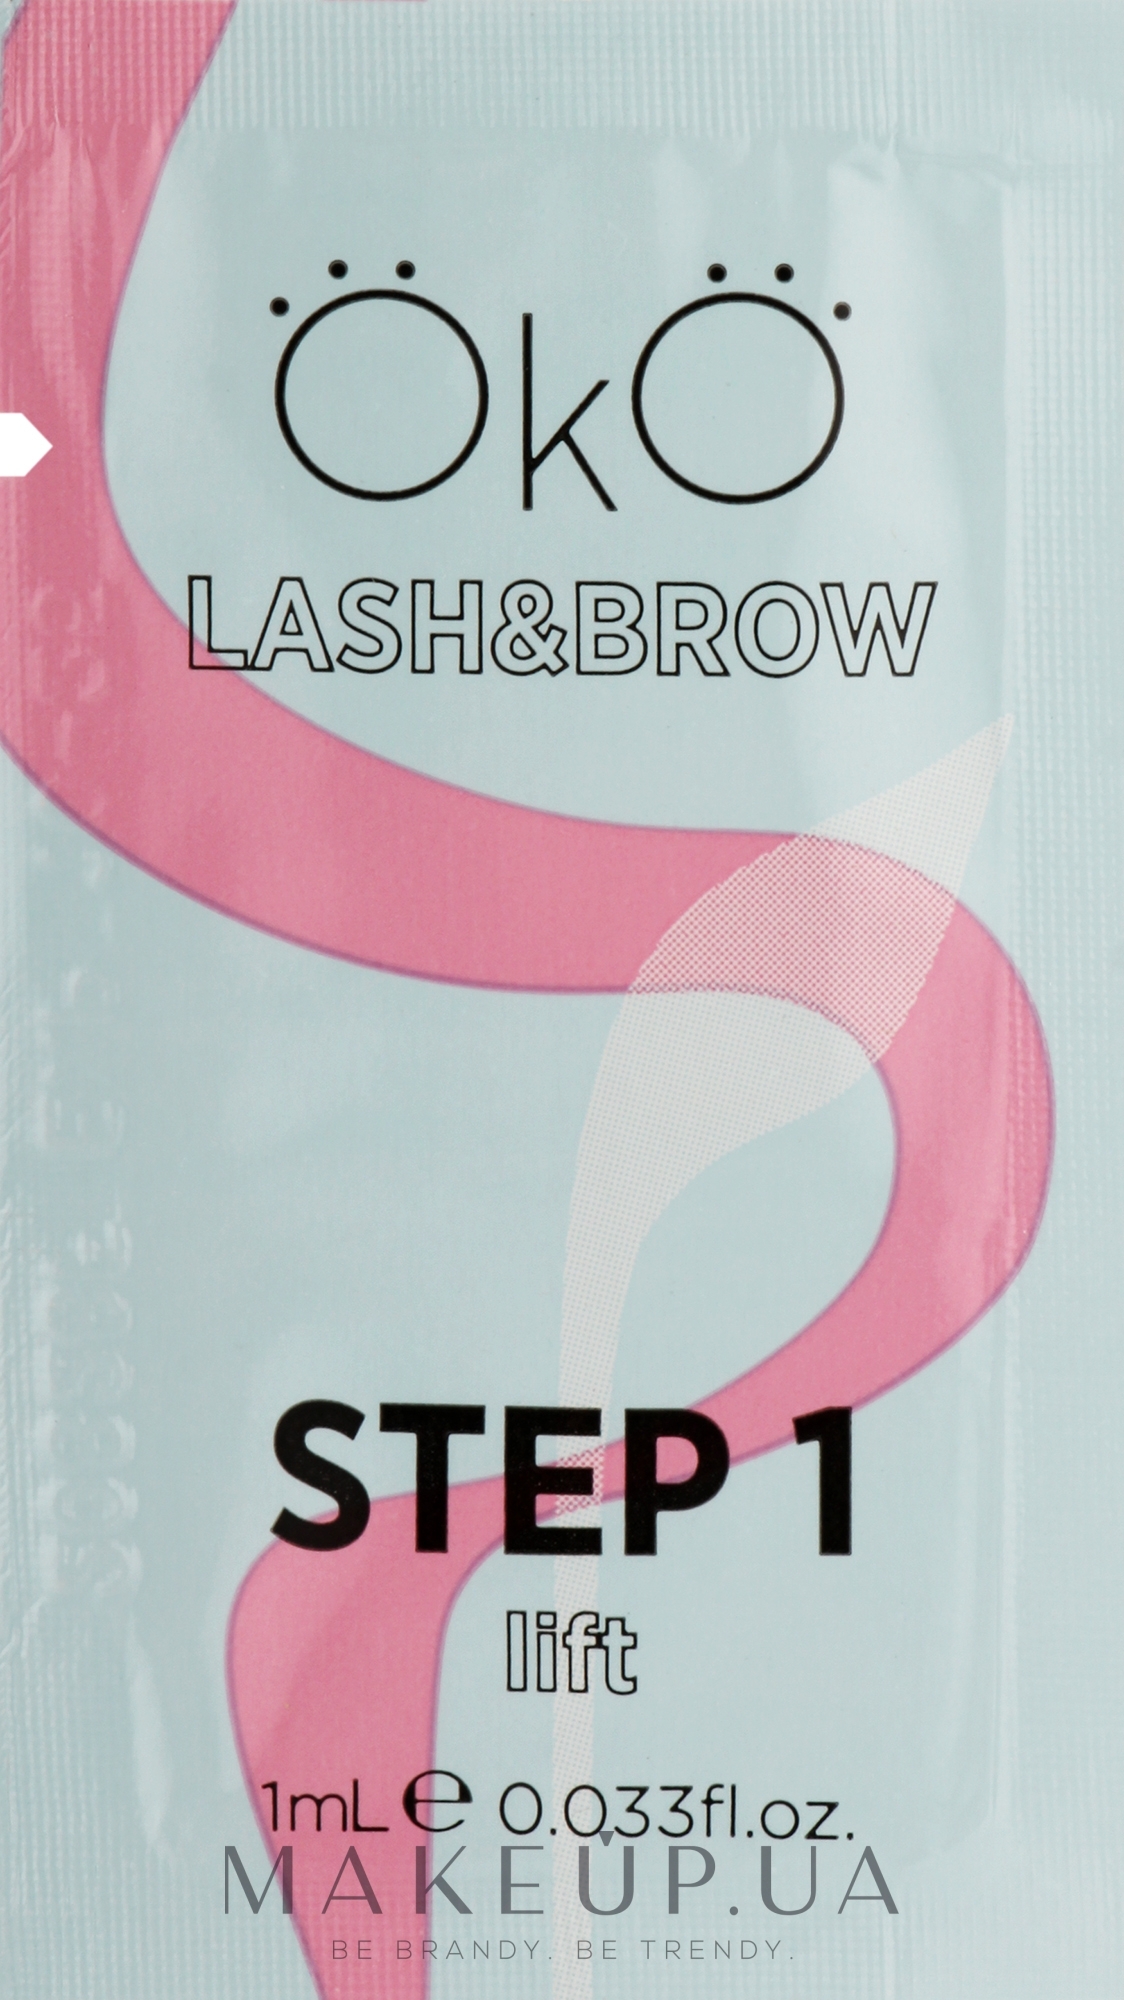 Засіб для ламінування вій і брів - OkO Lash & Brow Step 1 Lift — фото 1ml